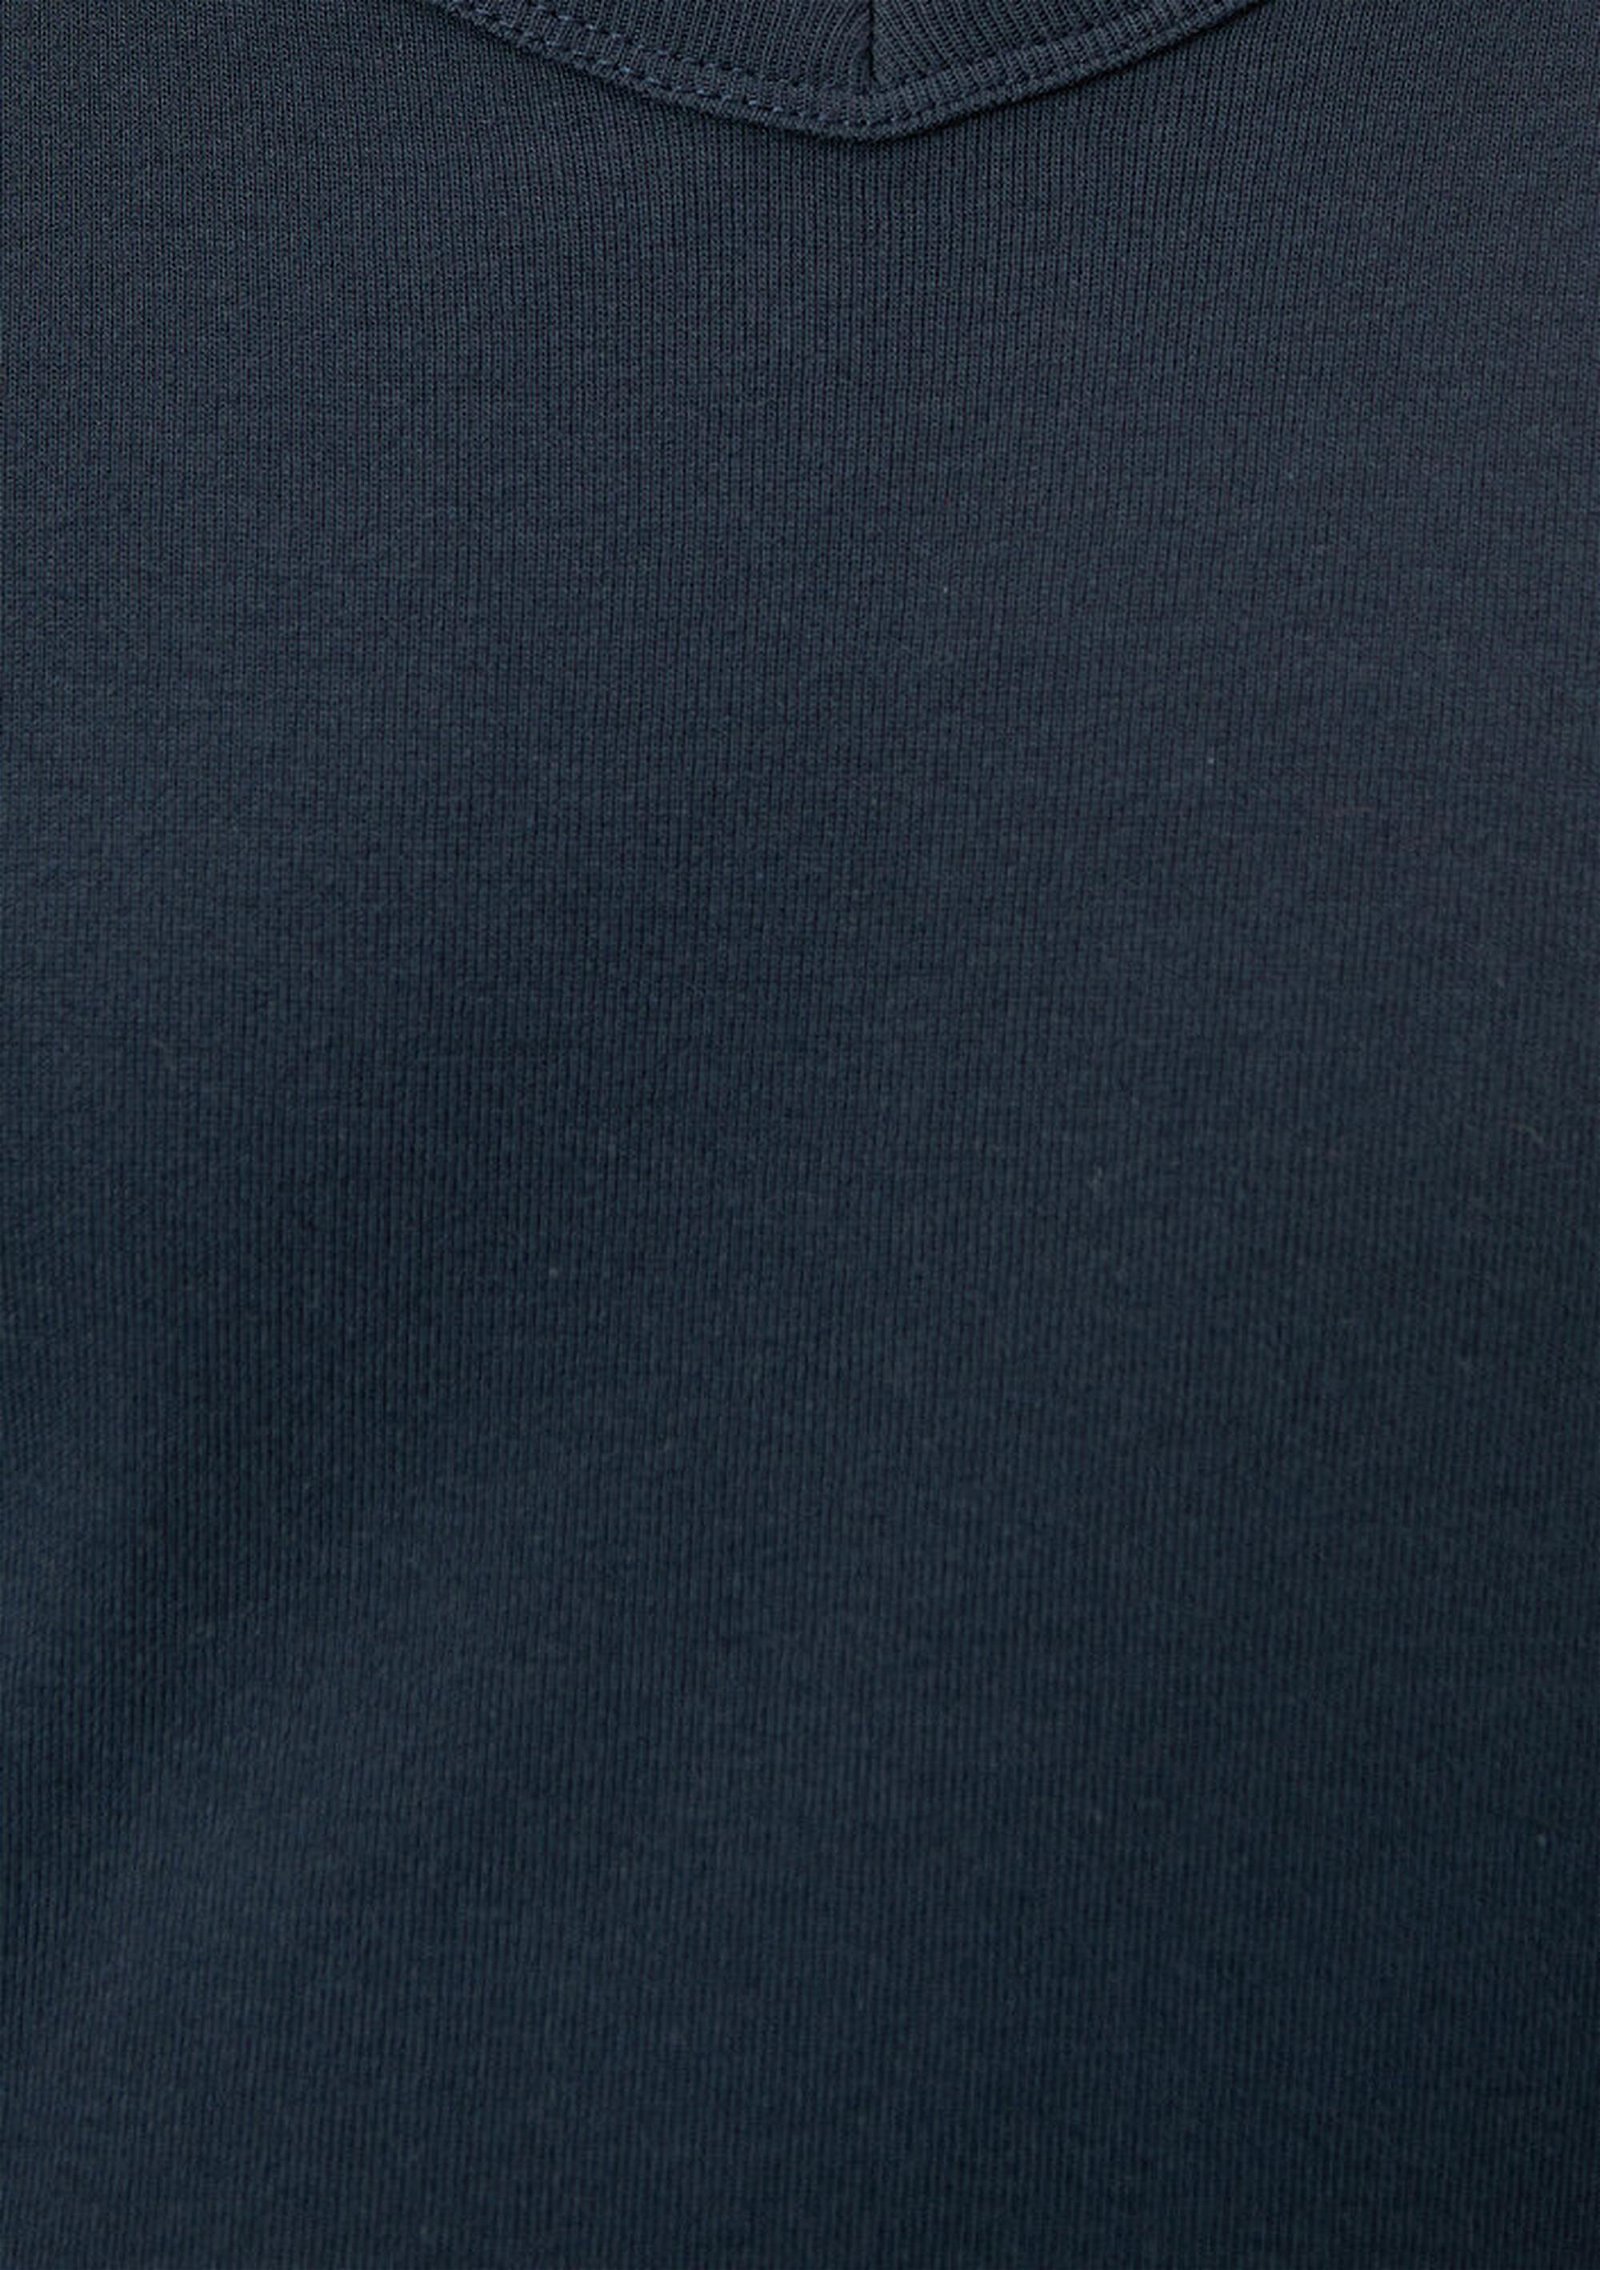 Mavi V Yaka Lacivert Basic Tişört Slim Fit / Dar Kesim 063748-17588